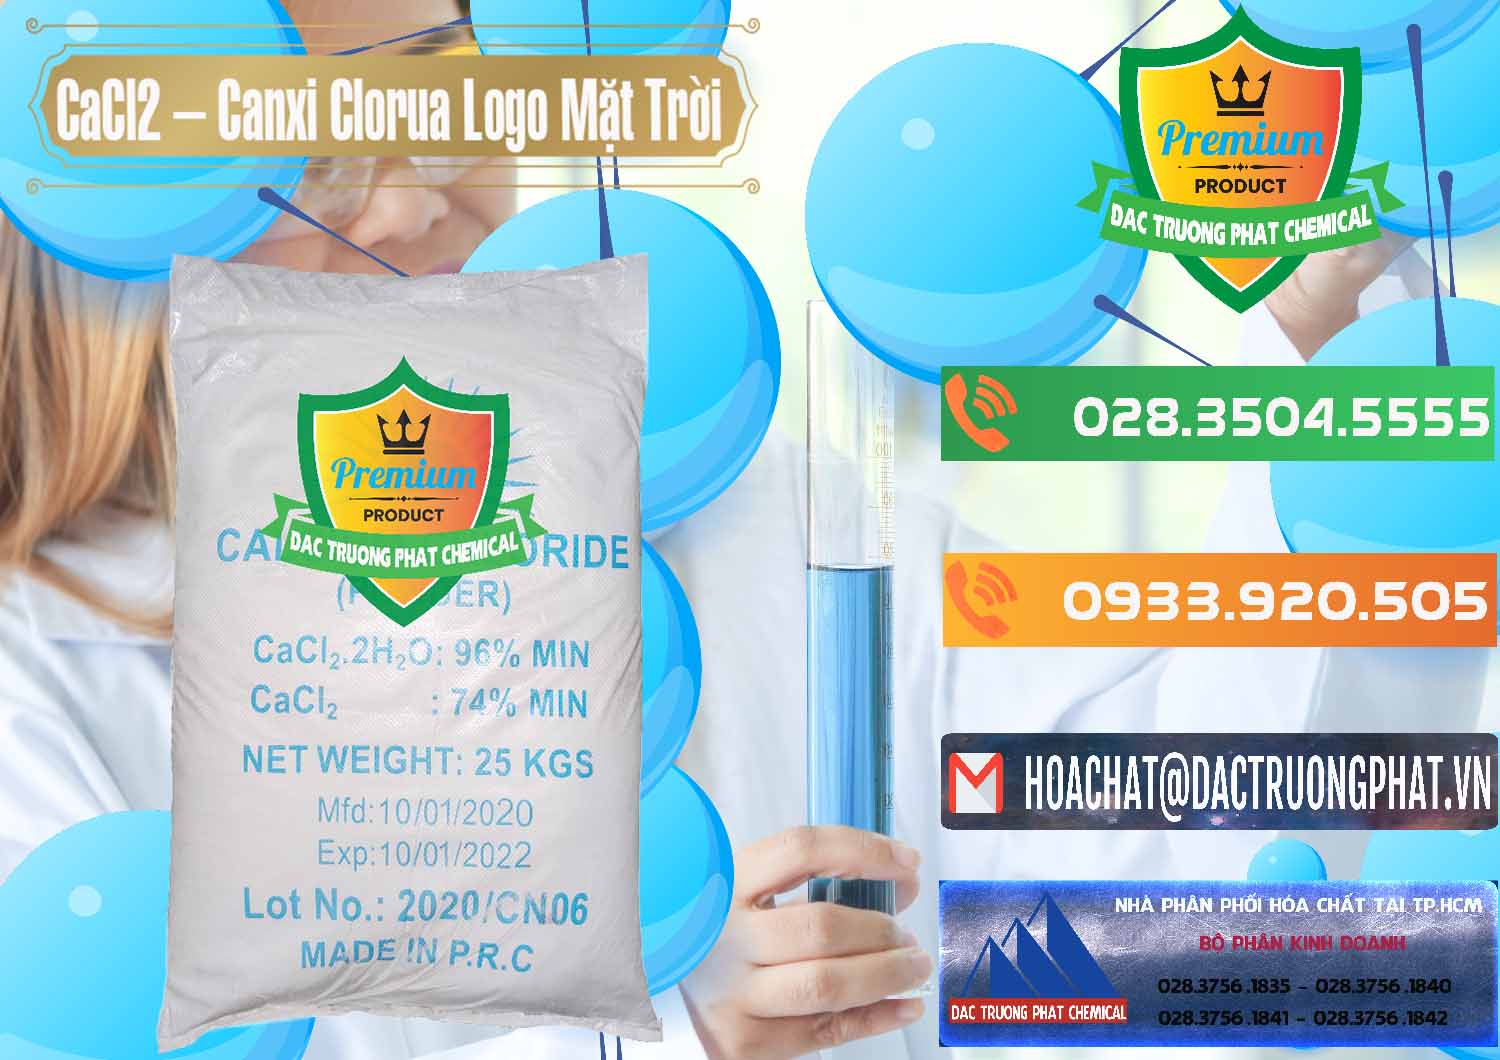 Công ty chuyên bán ( cung ứng ) CaCl2 – Canxi Clorua 96% Logo Mặt Trời Trung Quốc China - 0041 - Cty bán _ cung cấp hóa chất tại TP.HCM - hoachatxulynuoc.com.vn